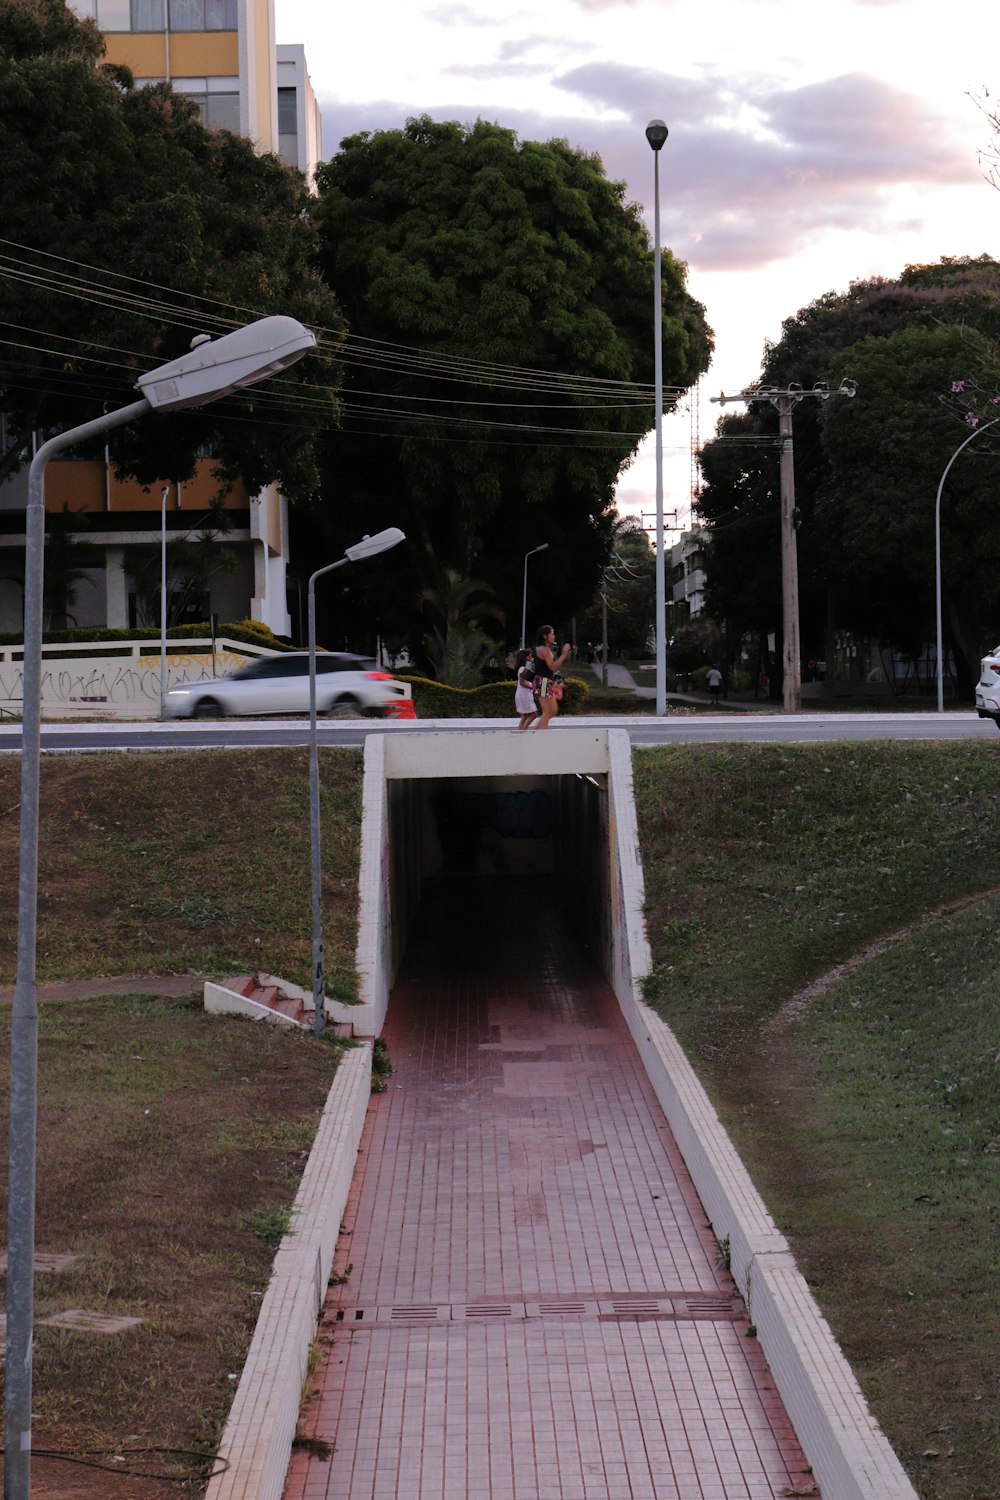 a man riding a skateboard into a tunnel